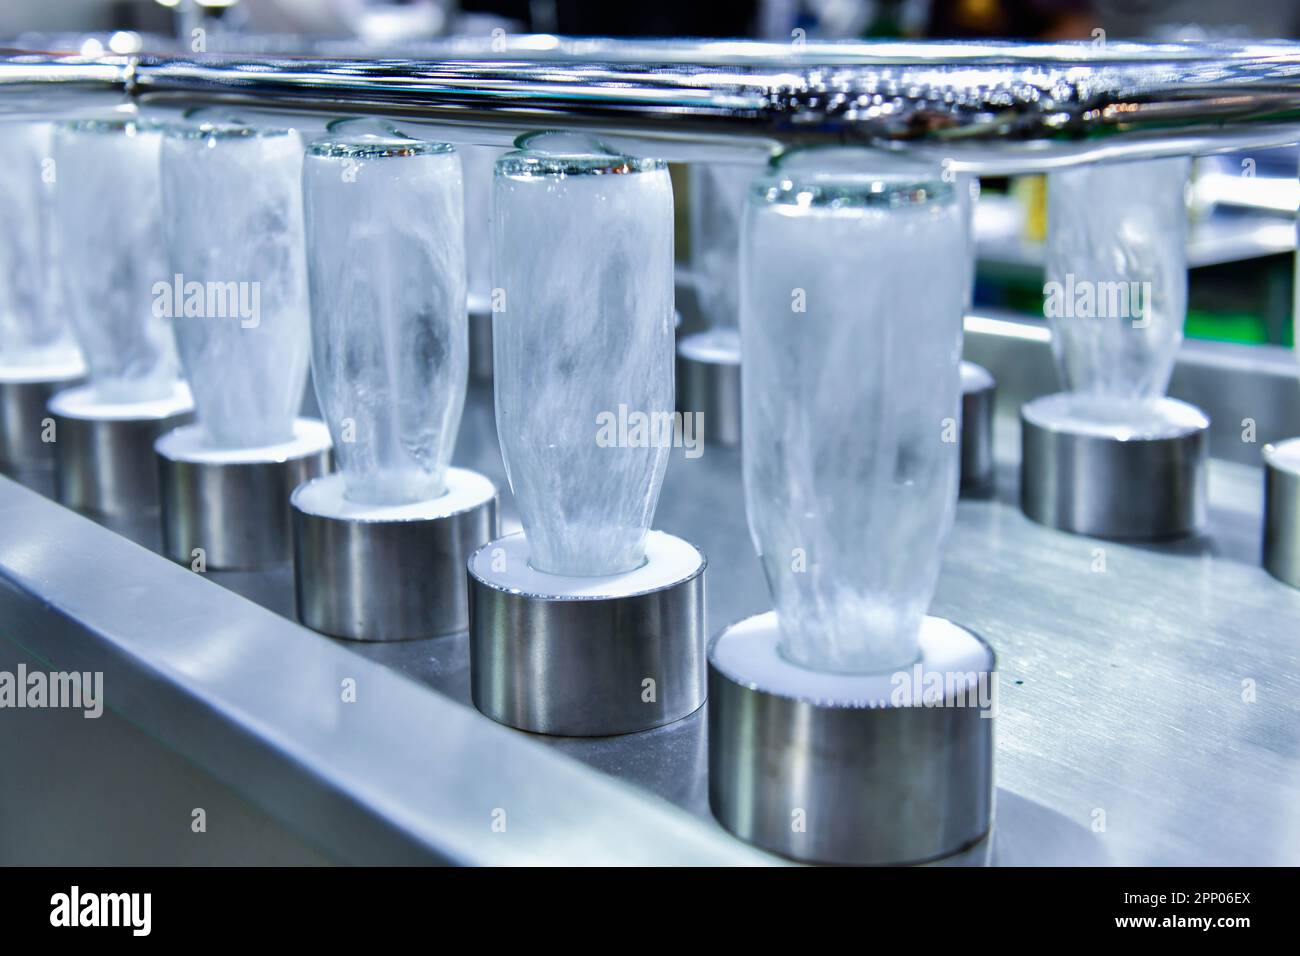 Flacons de nettoyage flacons en verre pour produits à boire en cours de traitement par eau chaude dans la machine automatique lors de la fabrication Banque D'Images